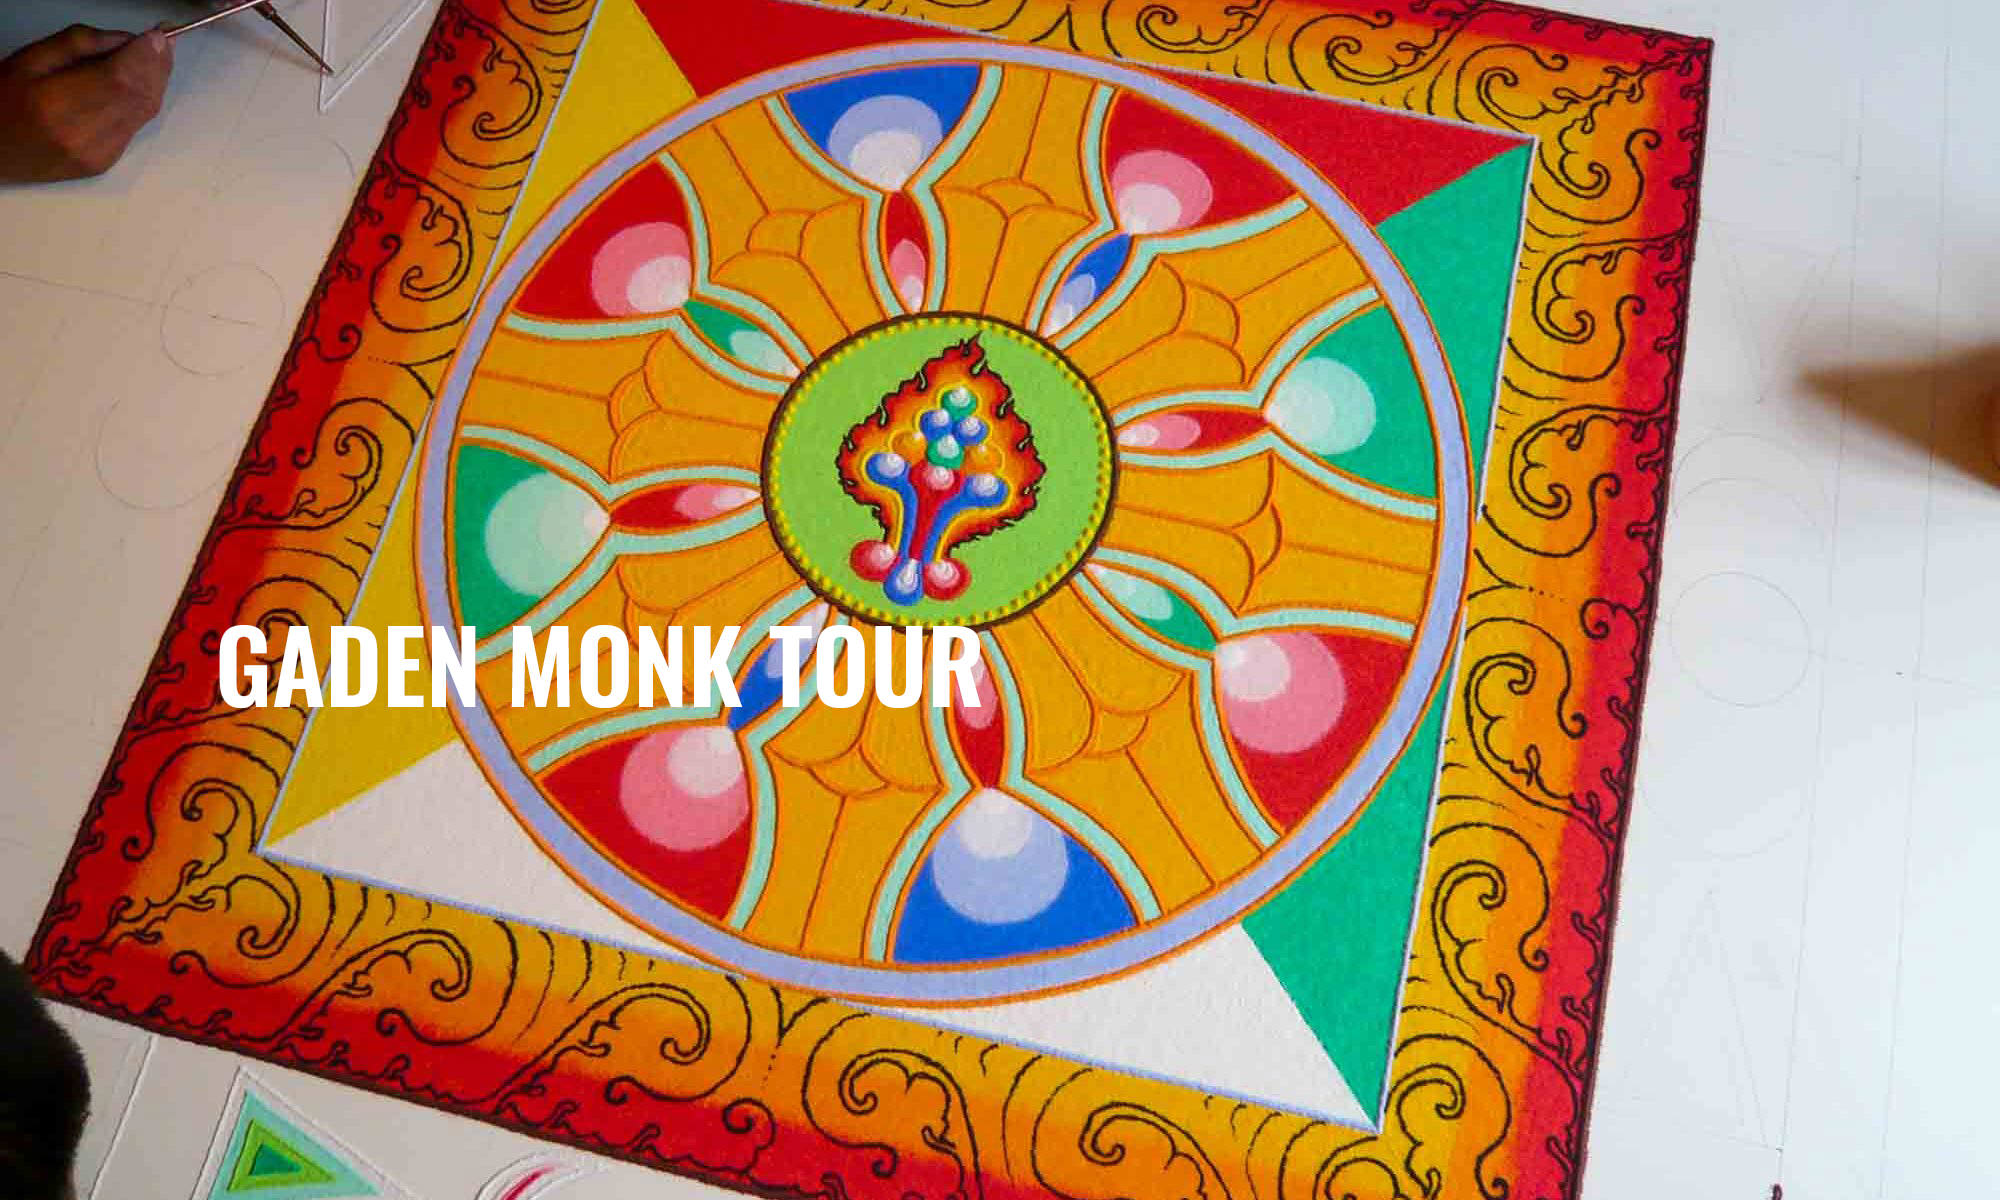 TIBETAN MONK TOUR